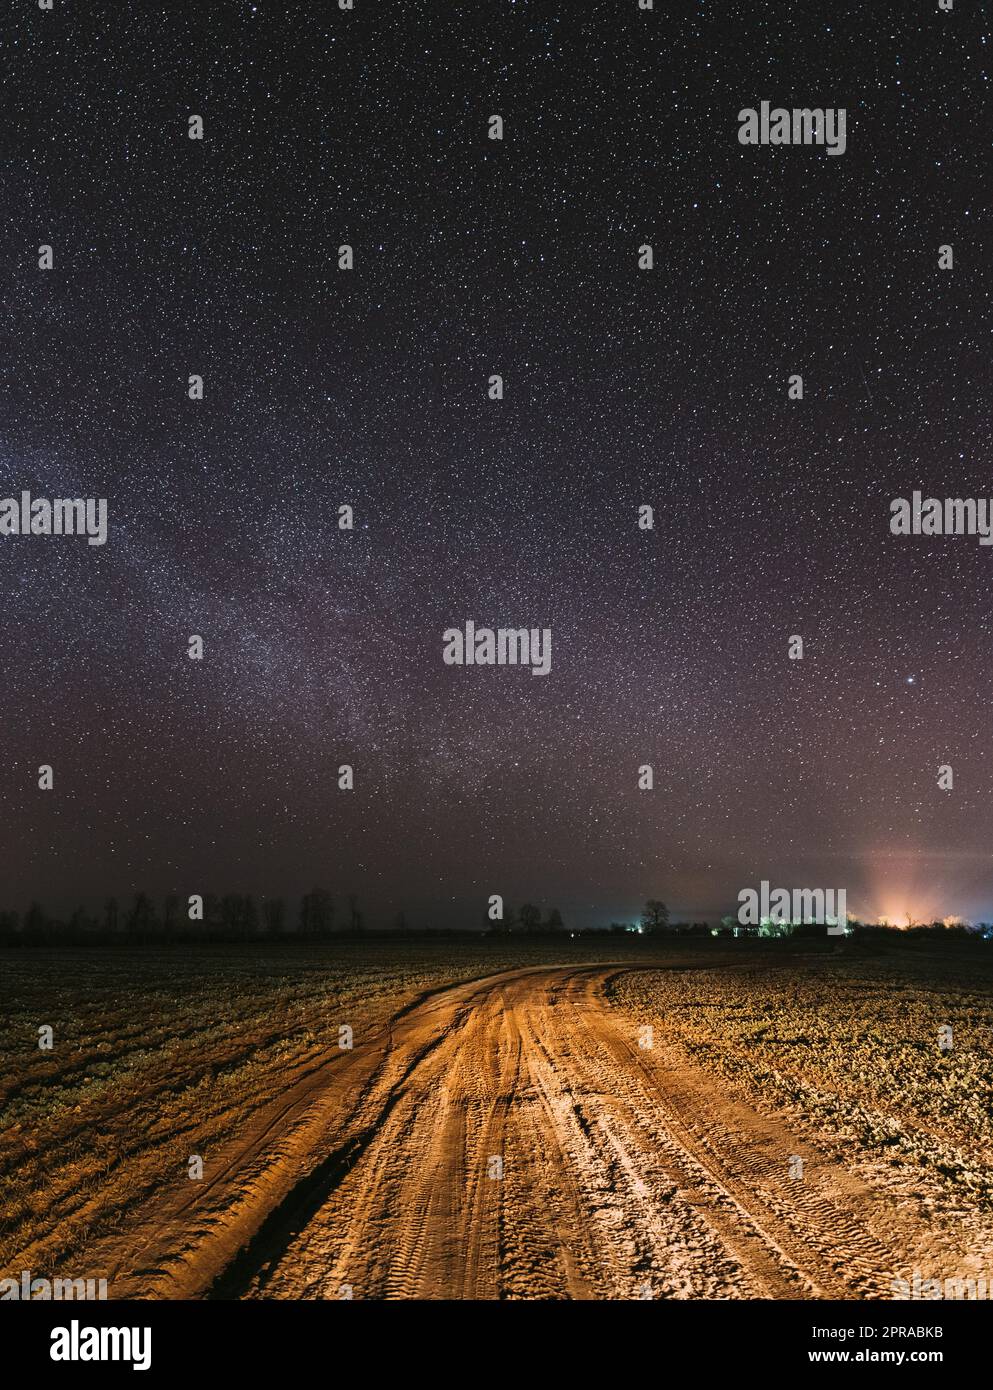 Ciel étoilé de nuit avec étoiles brillantes au-dessus du paysage de la route de campagne.Milky Way Galaxy et Rural Field Meadow Banque D'Images